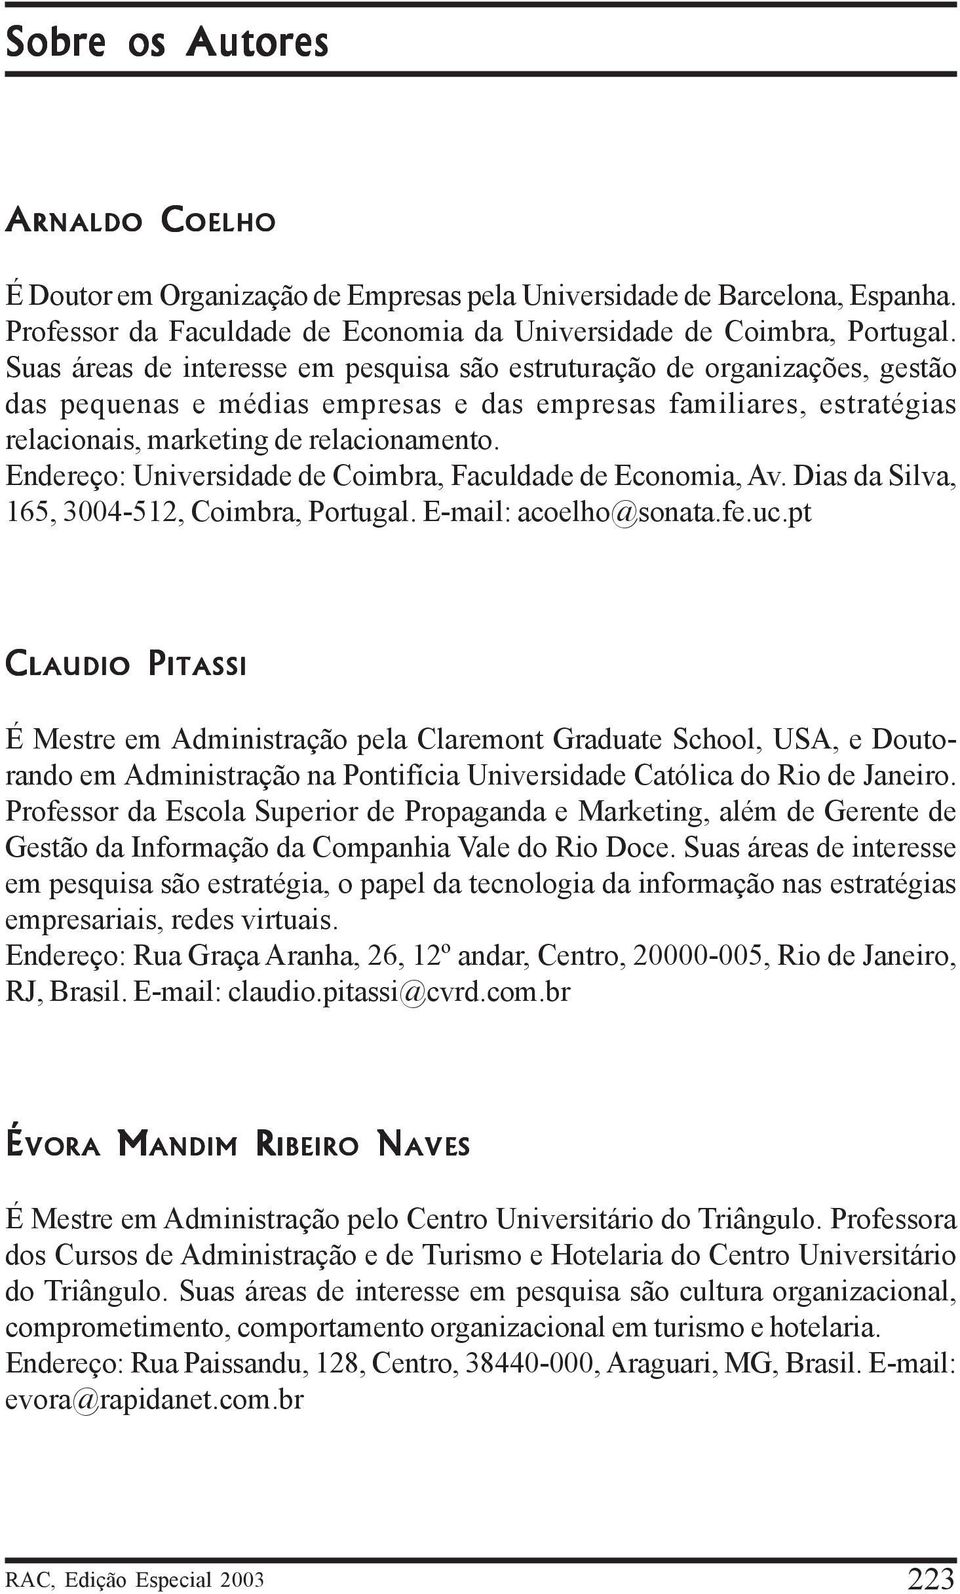 Endereço: Universidade de Coimbra, Faculdade de Economia, Av. Dias da Silva, 165, 3004-512, Coimbra, Portugal. E-mail: acoelho@sonata.fe.uc.